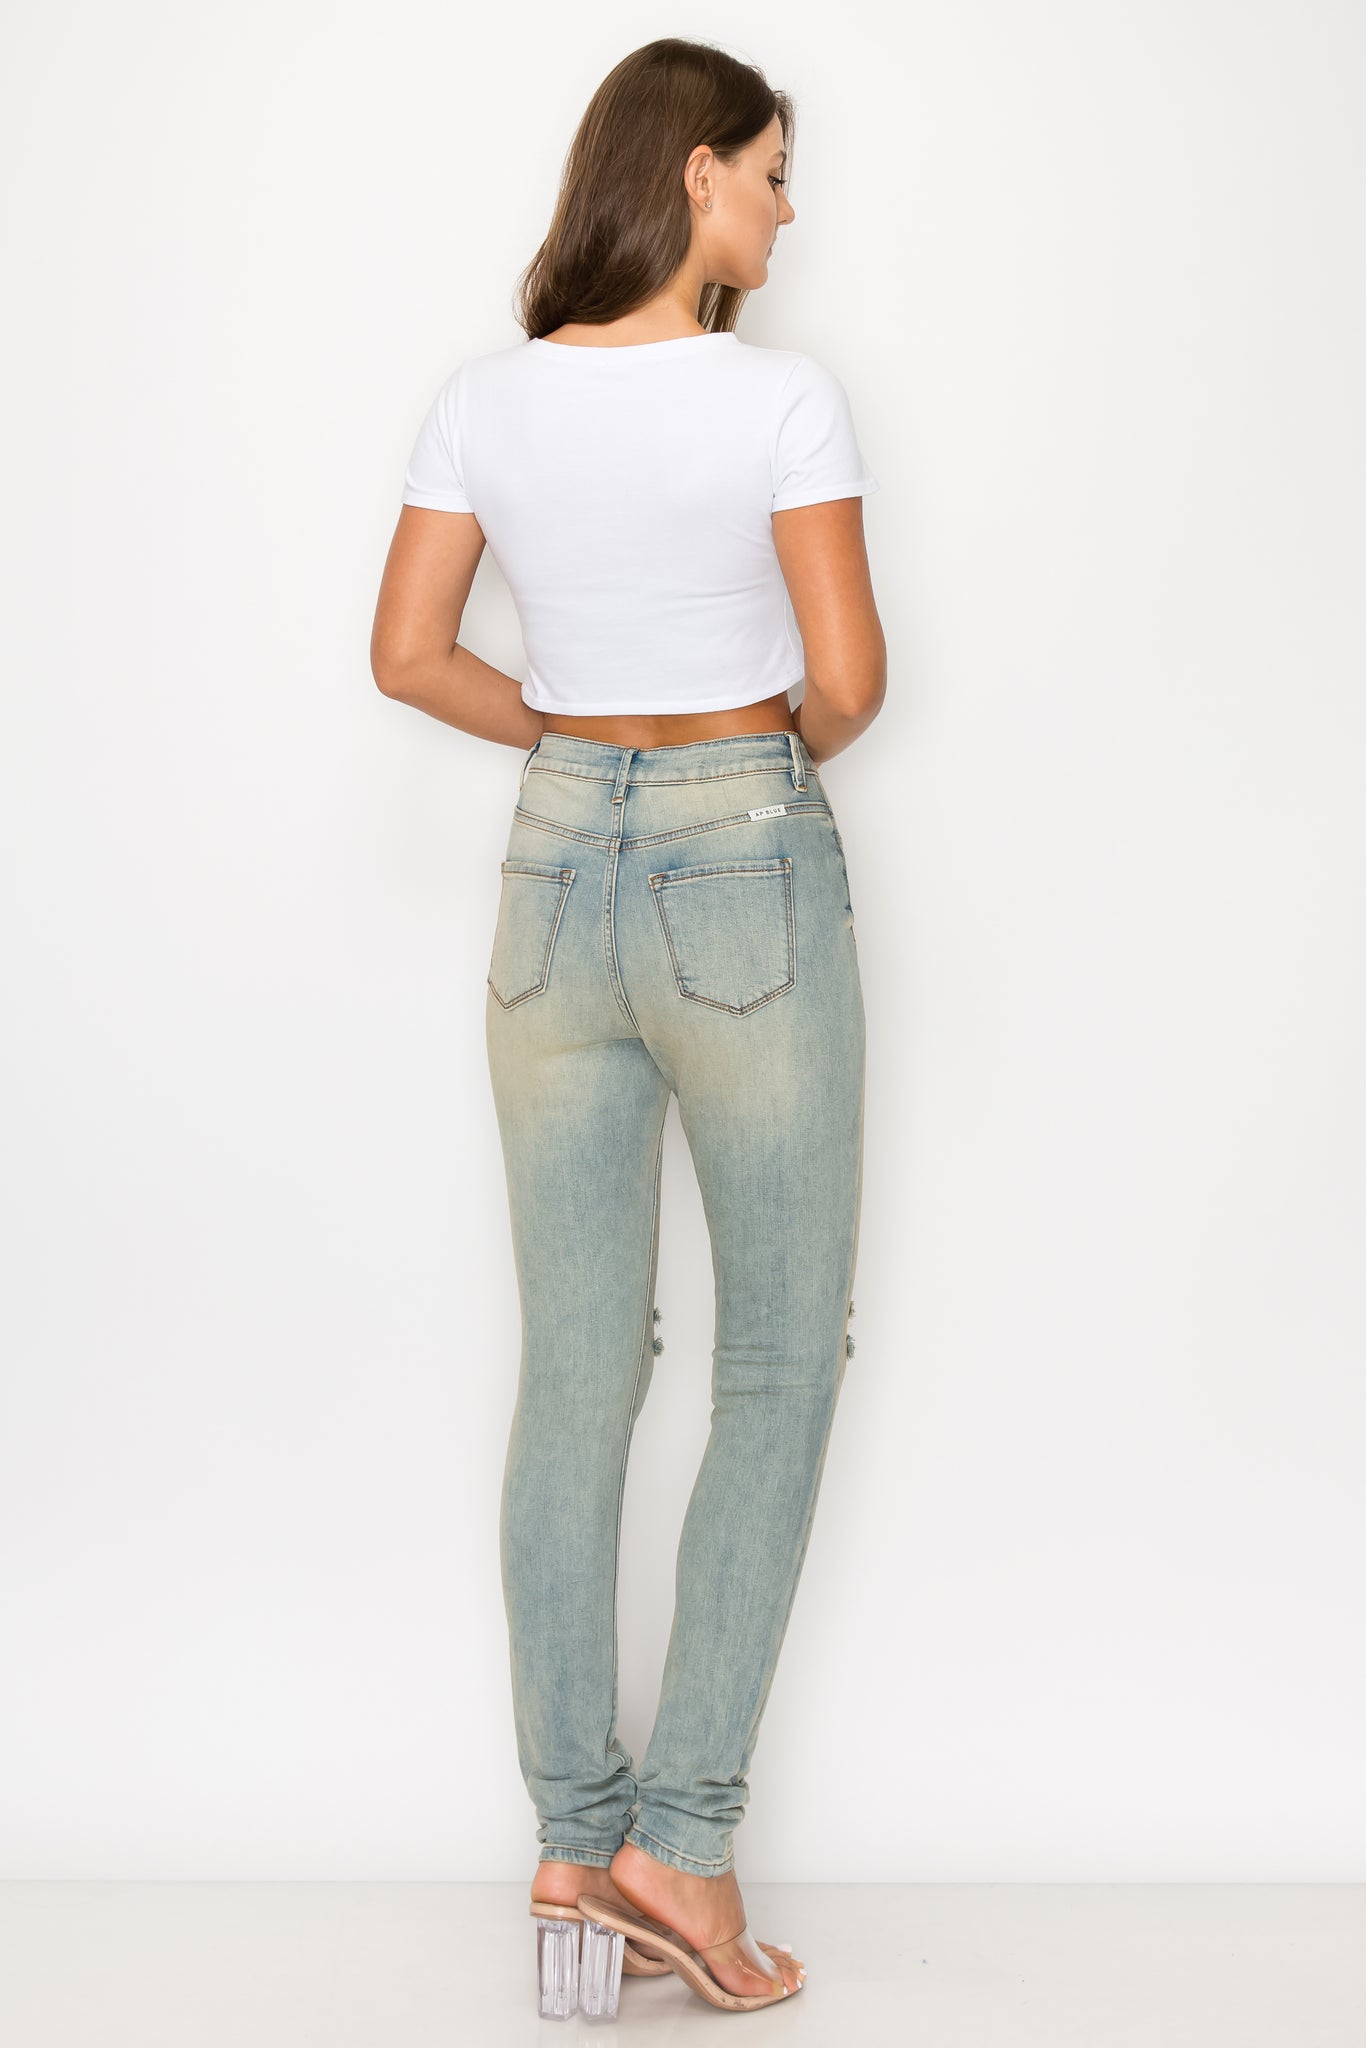 40515 Women's High Waisted Slit Knee Light Blue Skinny Jeans